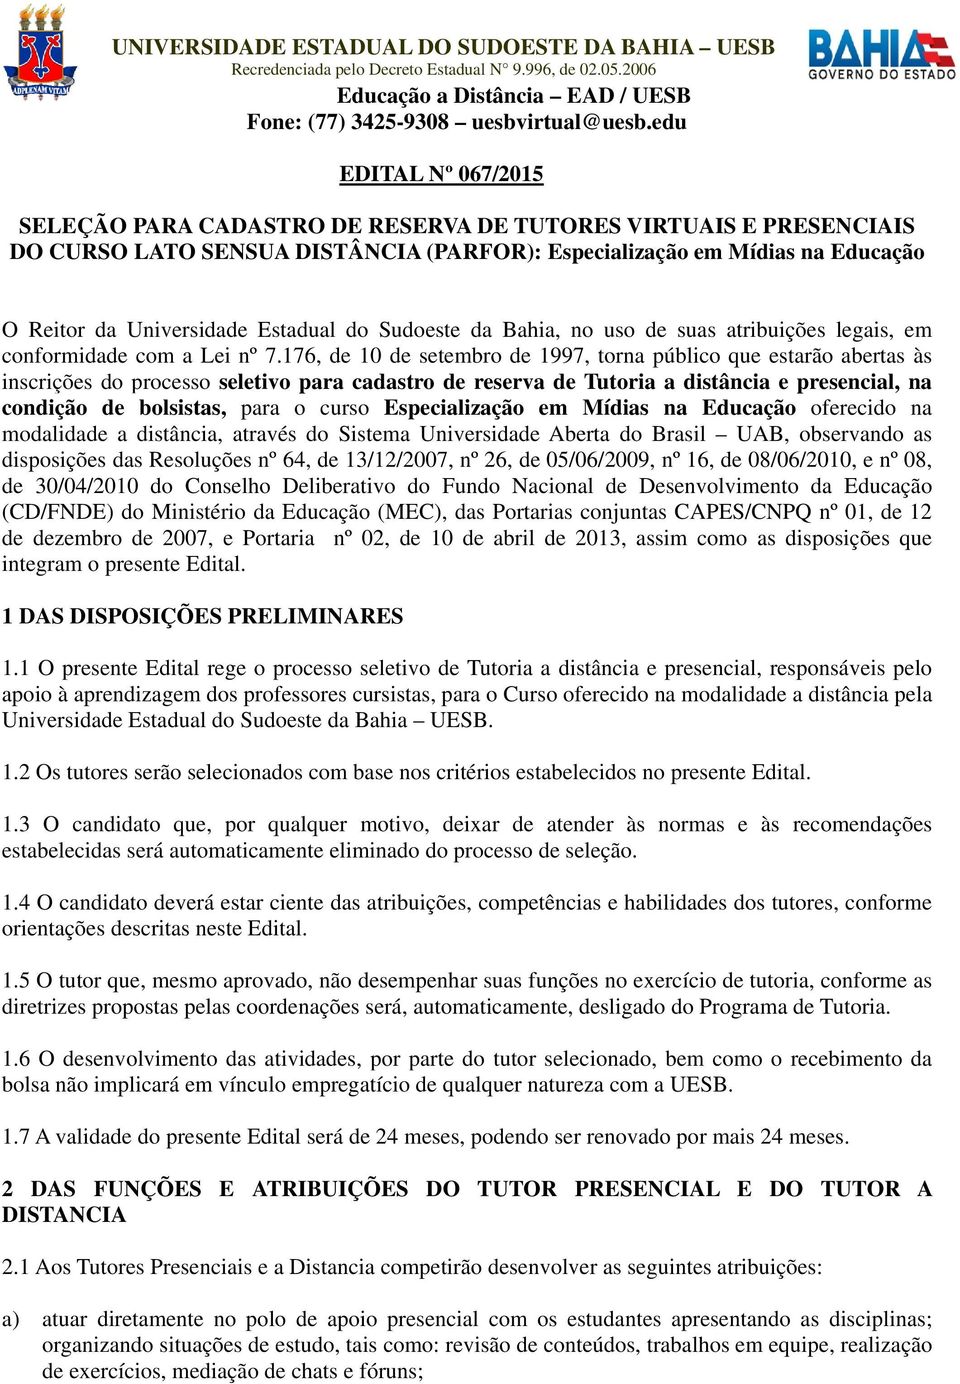 Estadual do Sudoeste da Bahia, no uso de suas atribuições legais, em conformidade com a Lei nº 7.